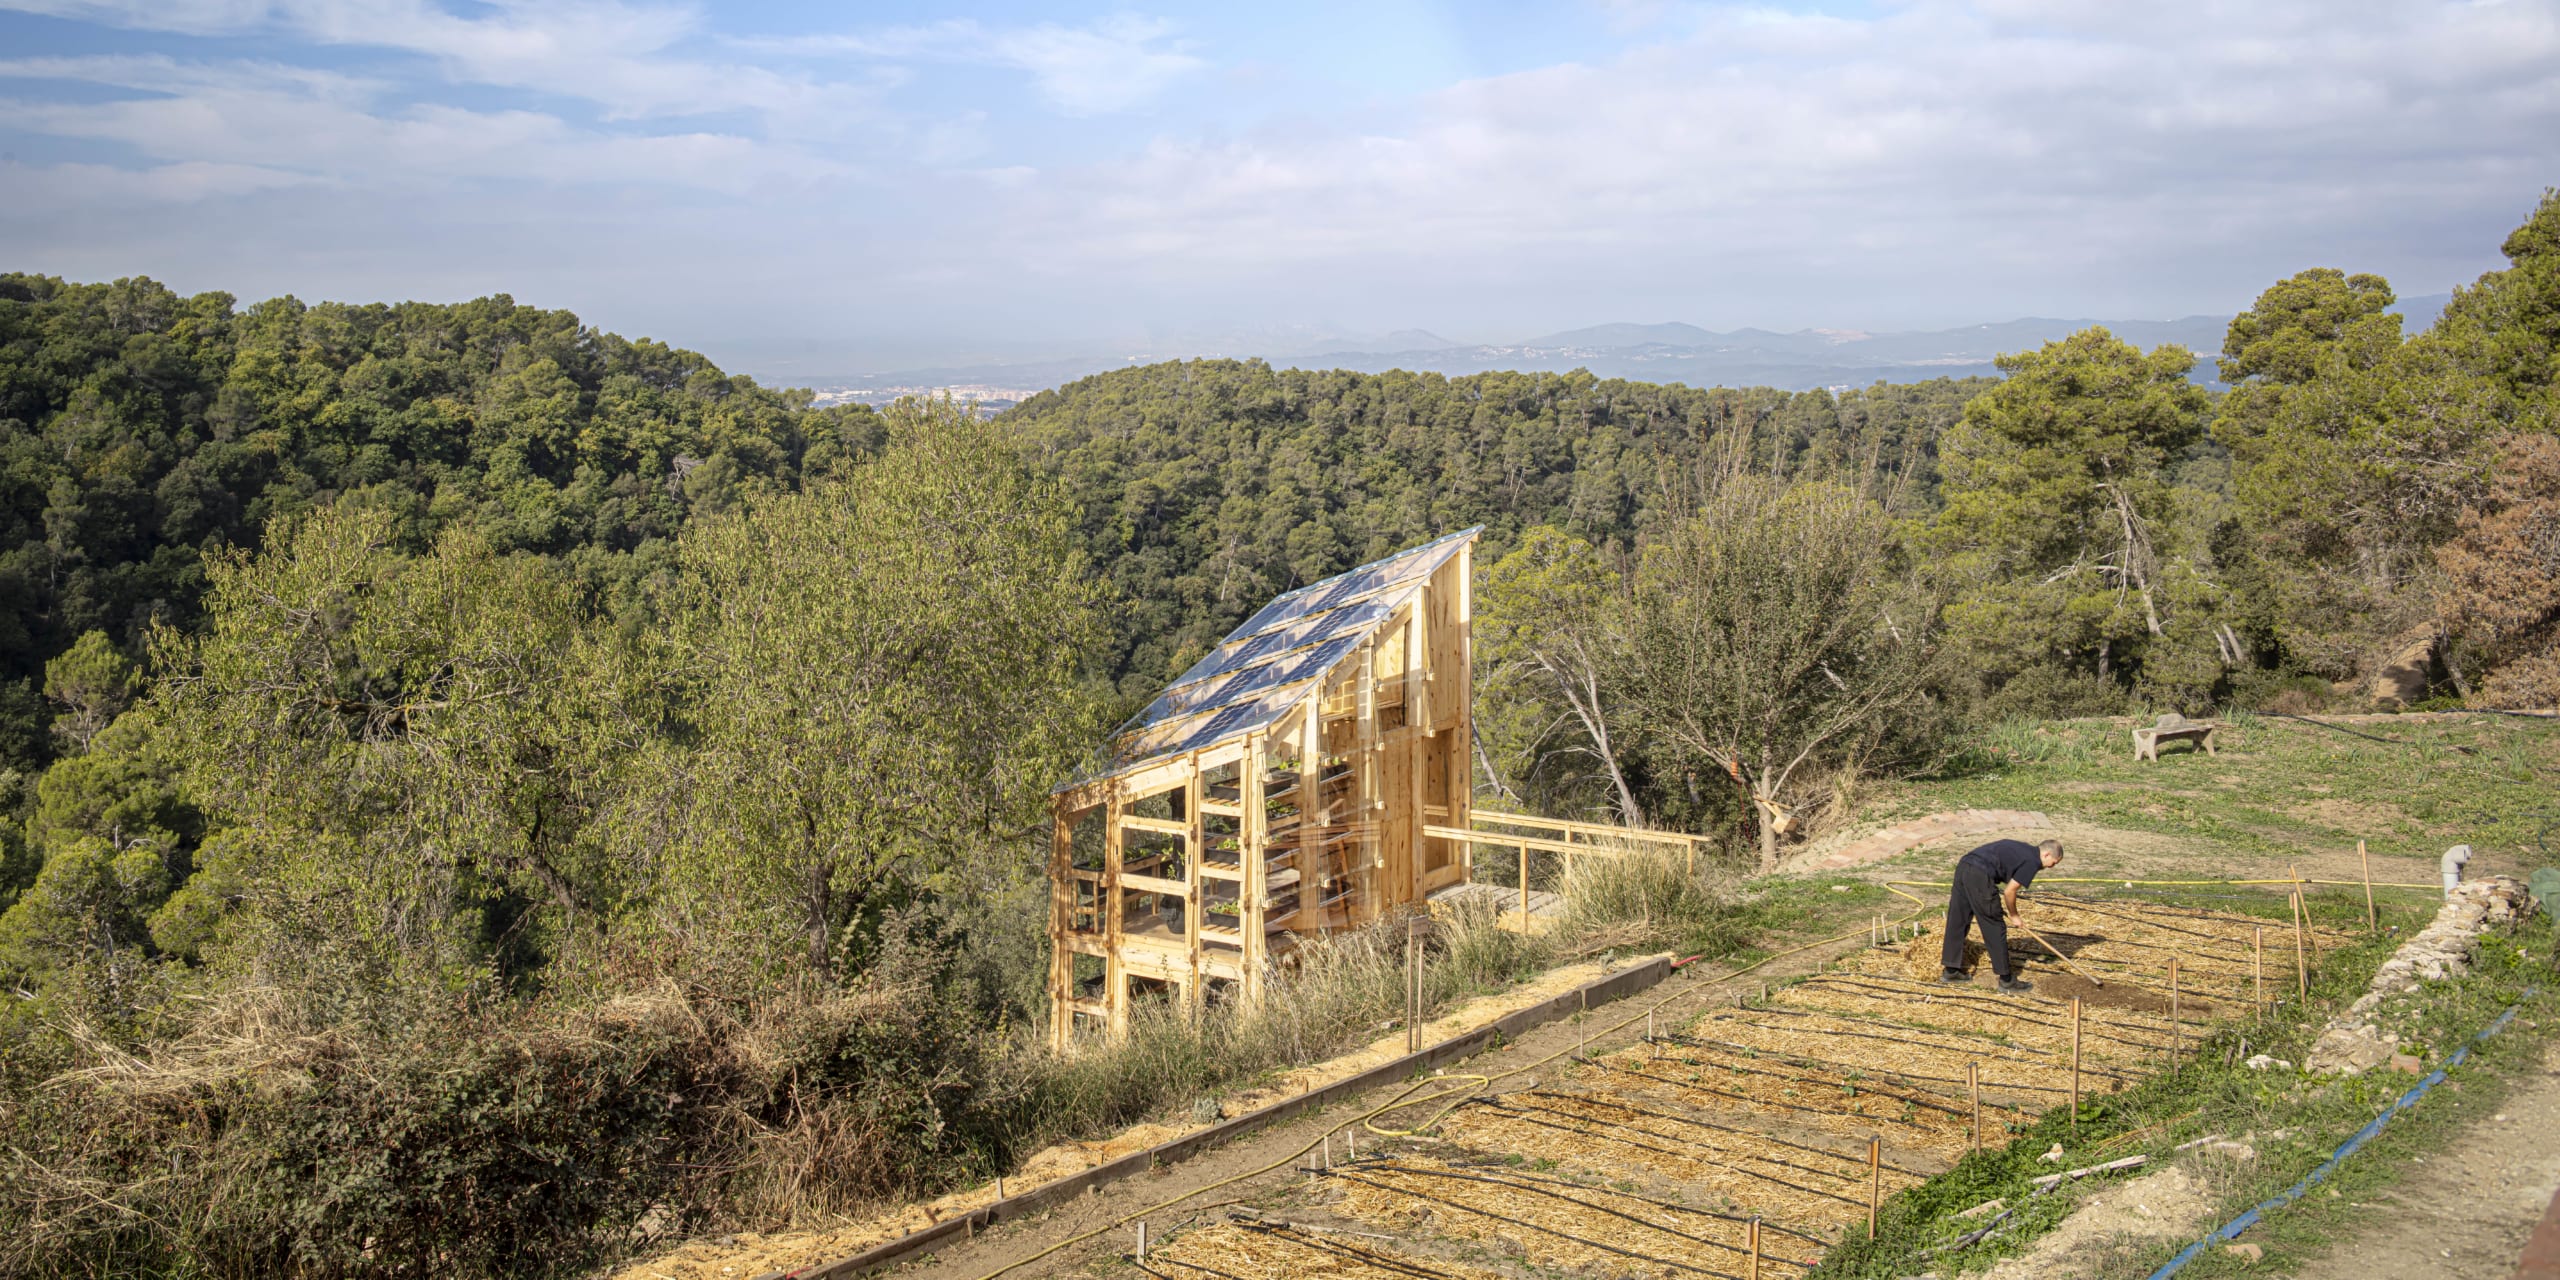 Image via Institute for Advanced Architecture of Catalonia